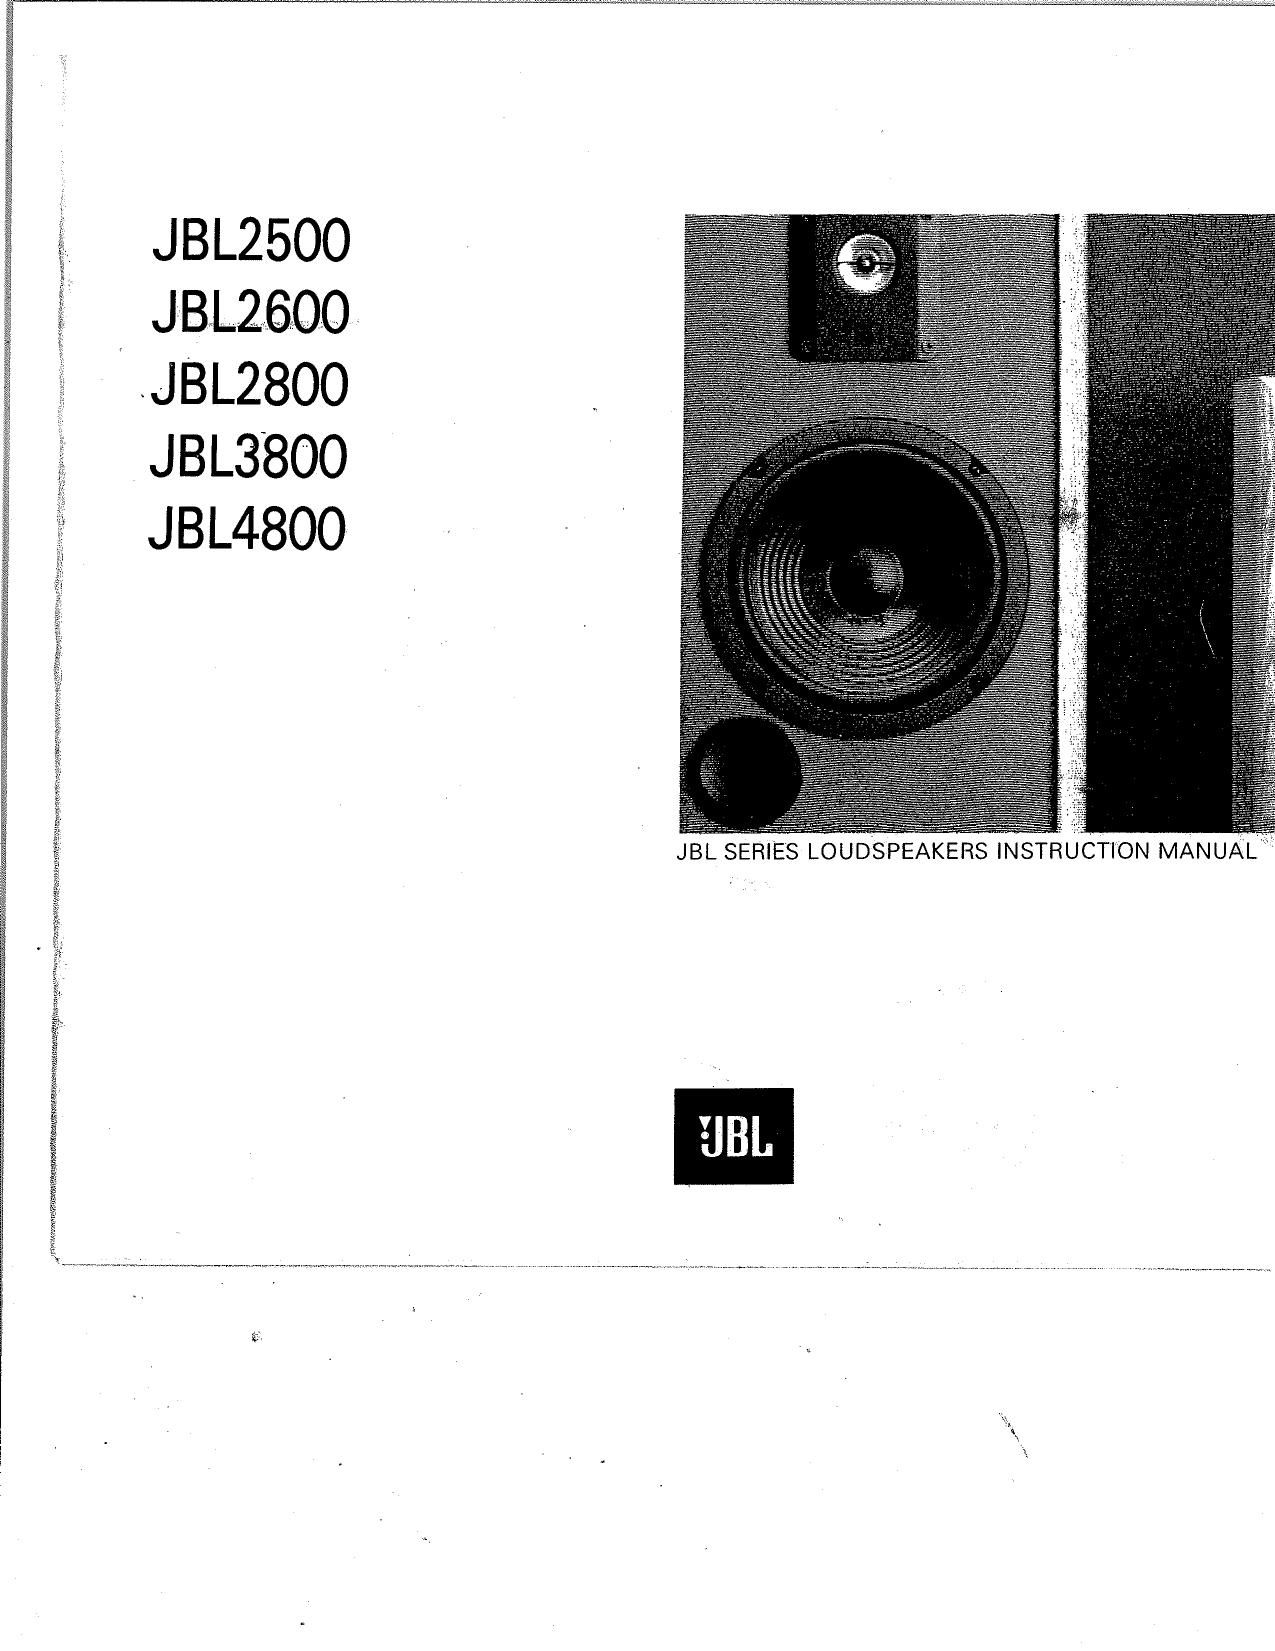 Jbl 2800 Owners Manual